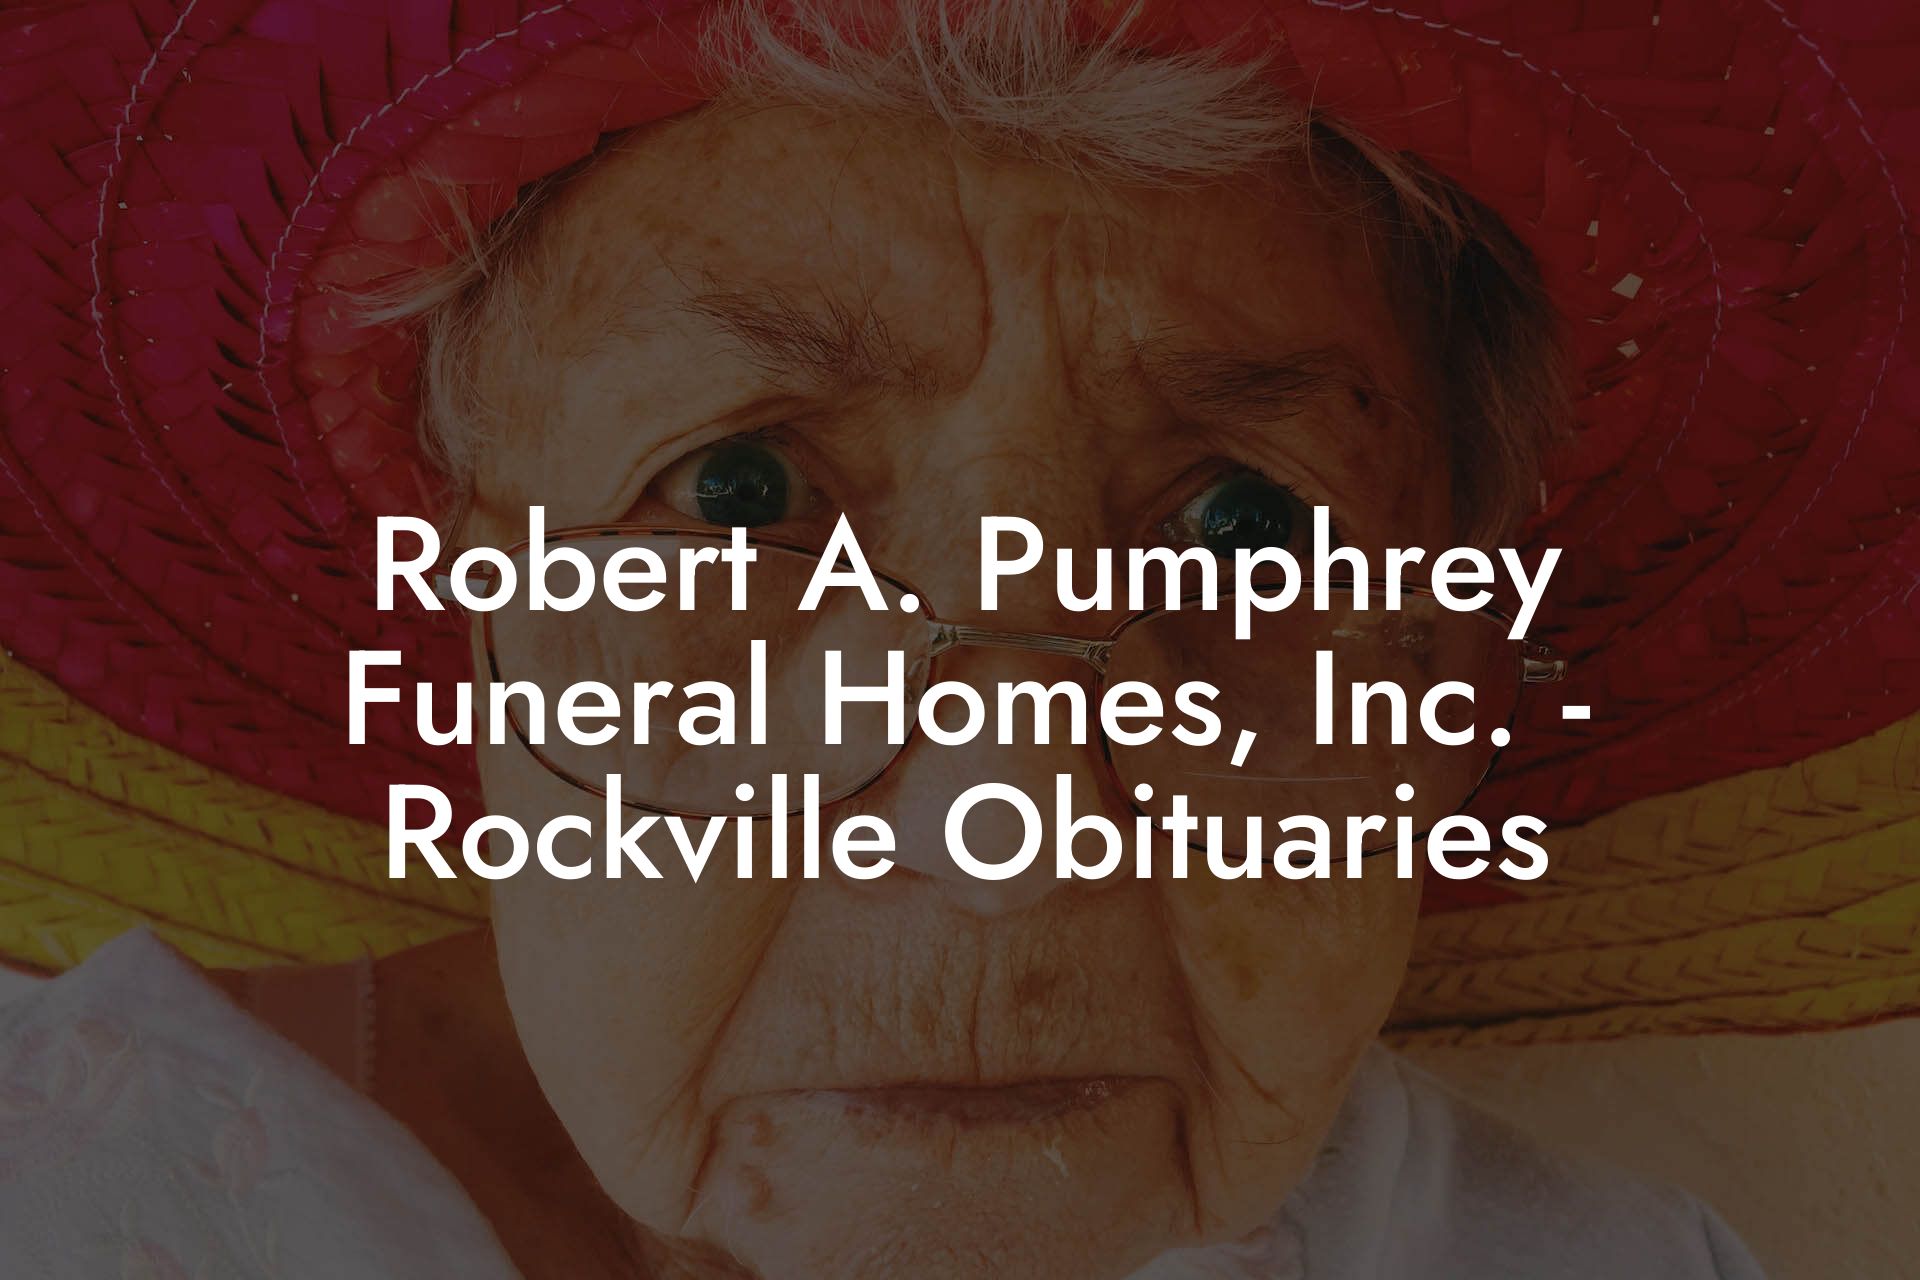 Robert A. Pumphrey Funeral Homes, Inc. - Rockville Obituaries